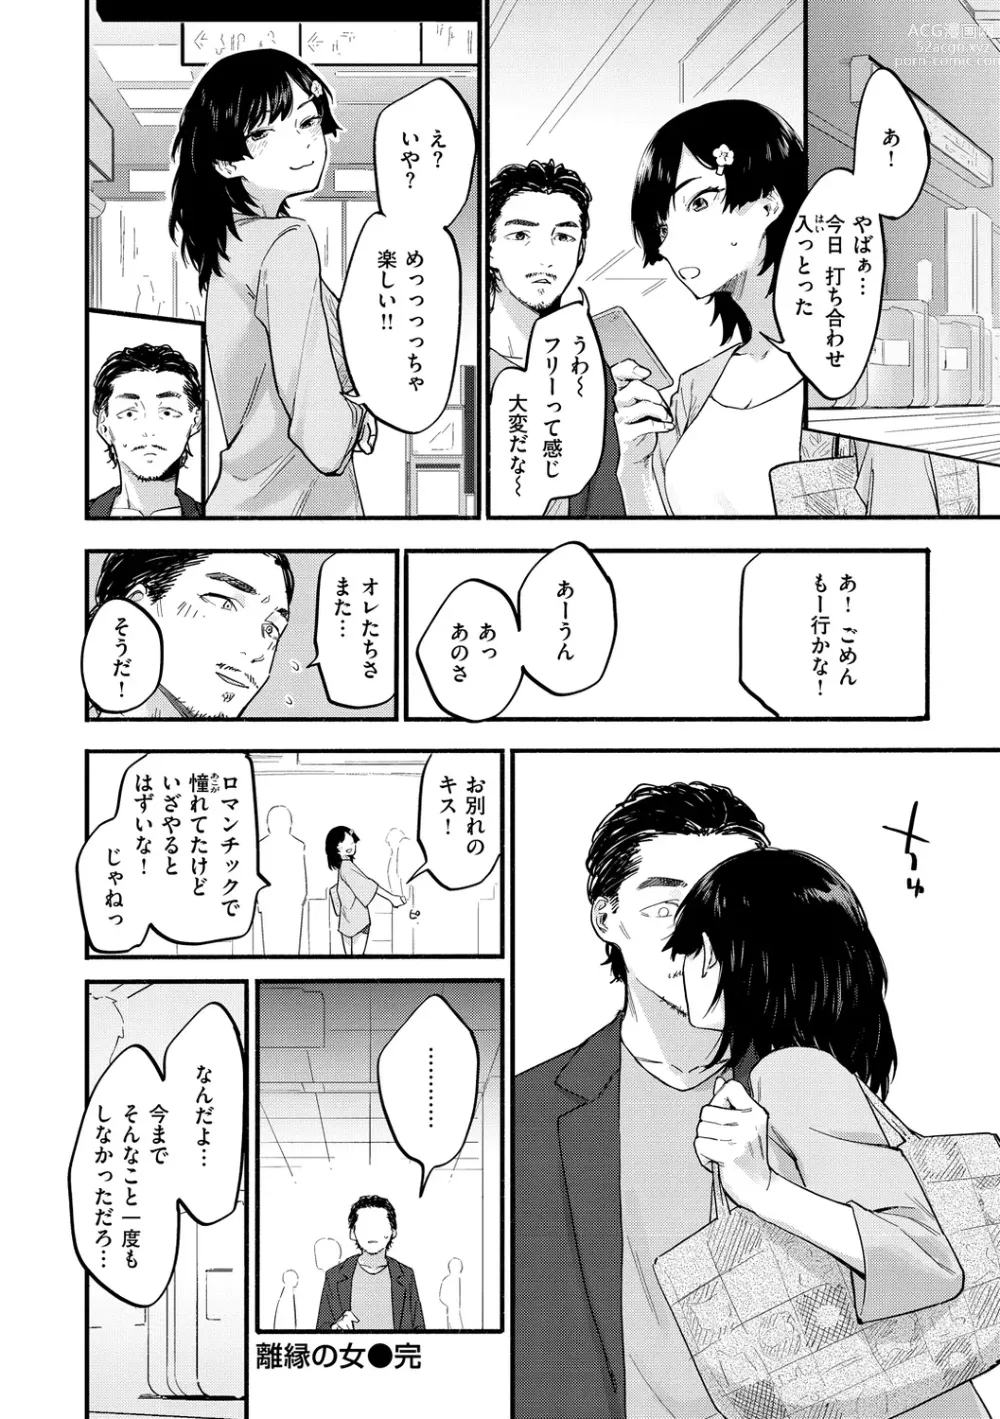 Page 144 of manga Yabai Onna